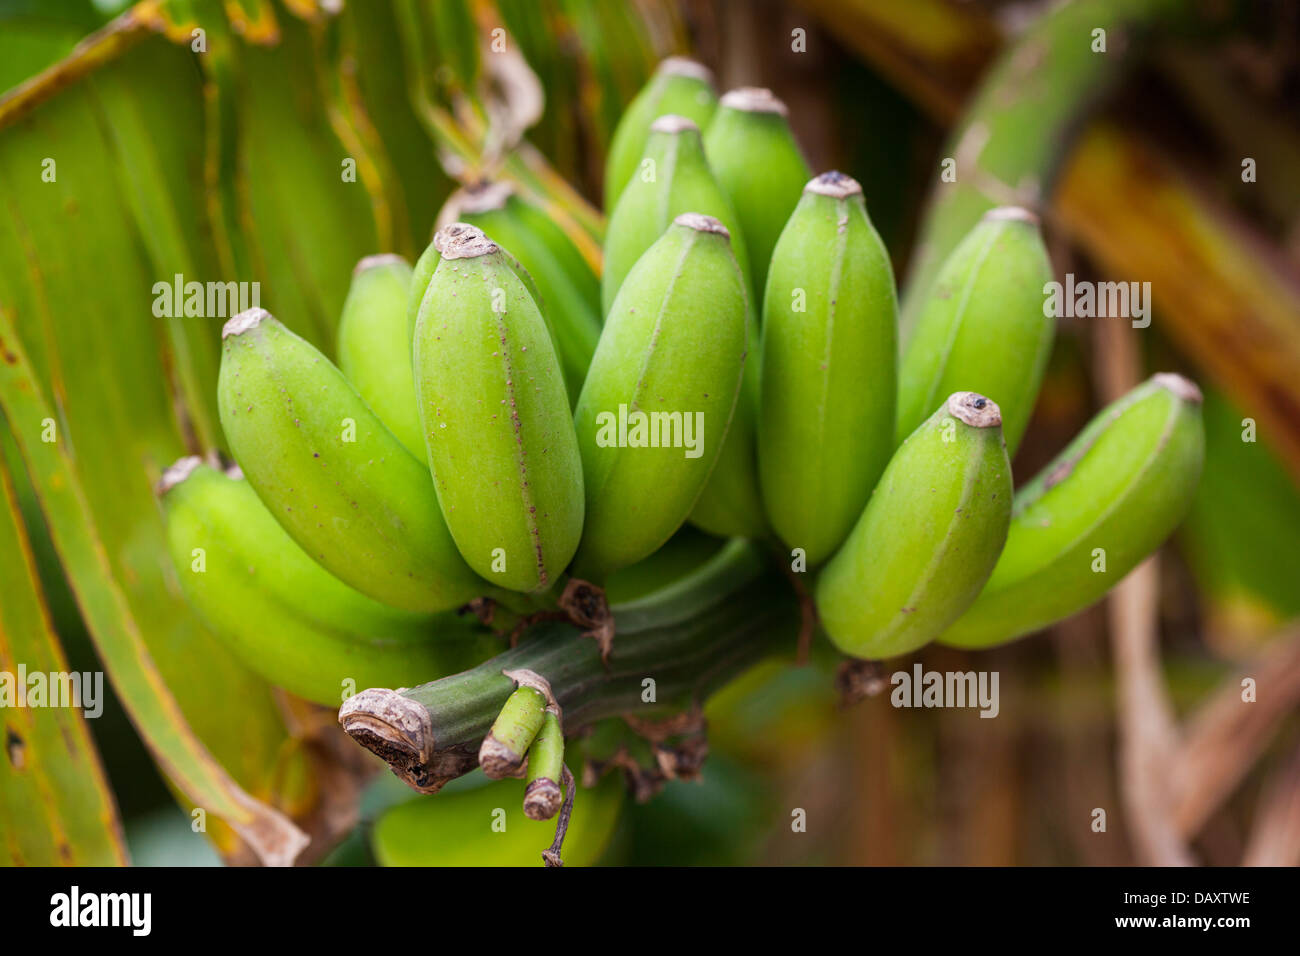 Eine Reihe von grünen Bananen wachsen auf einem Baum. Selektiven Fokus auf engsten Frucht. Stockfoto